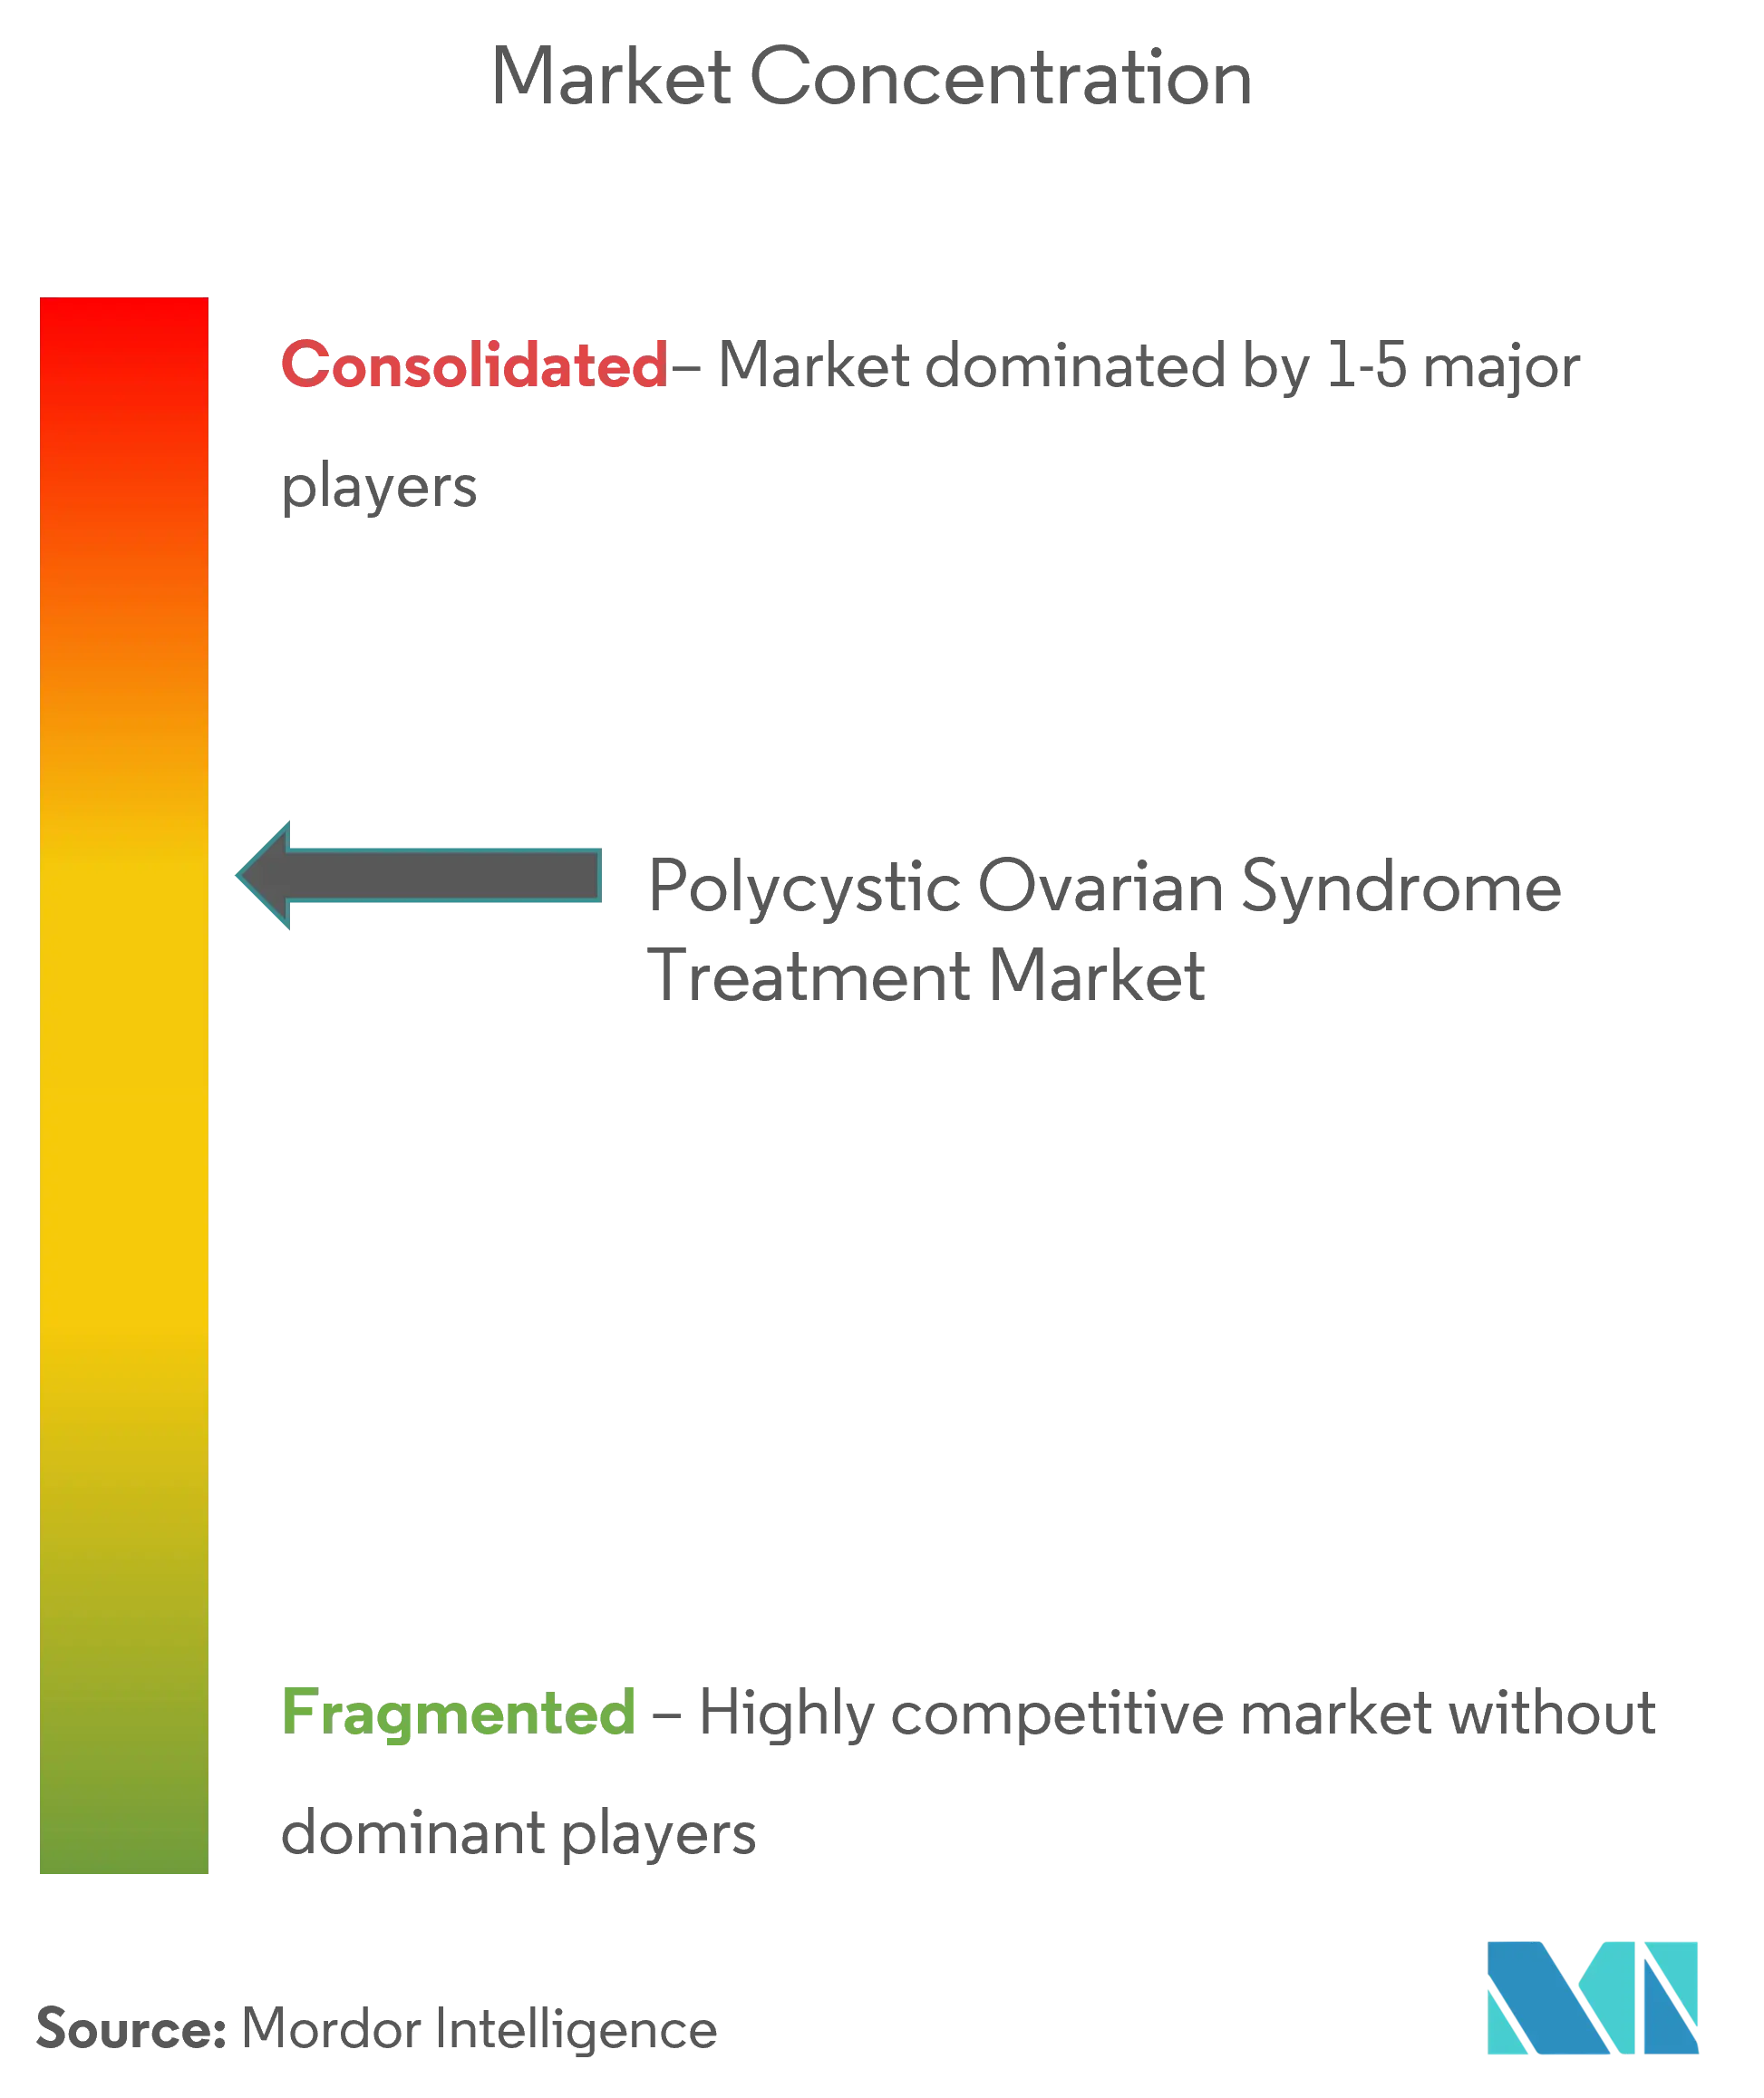 Marktkonzentration für die Behandlung des polyzystischen Ovarialsyndroms